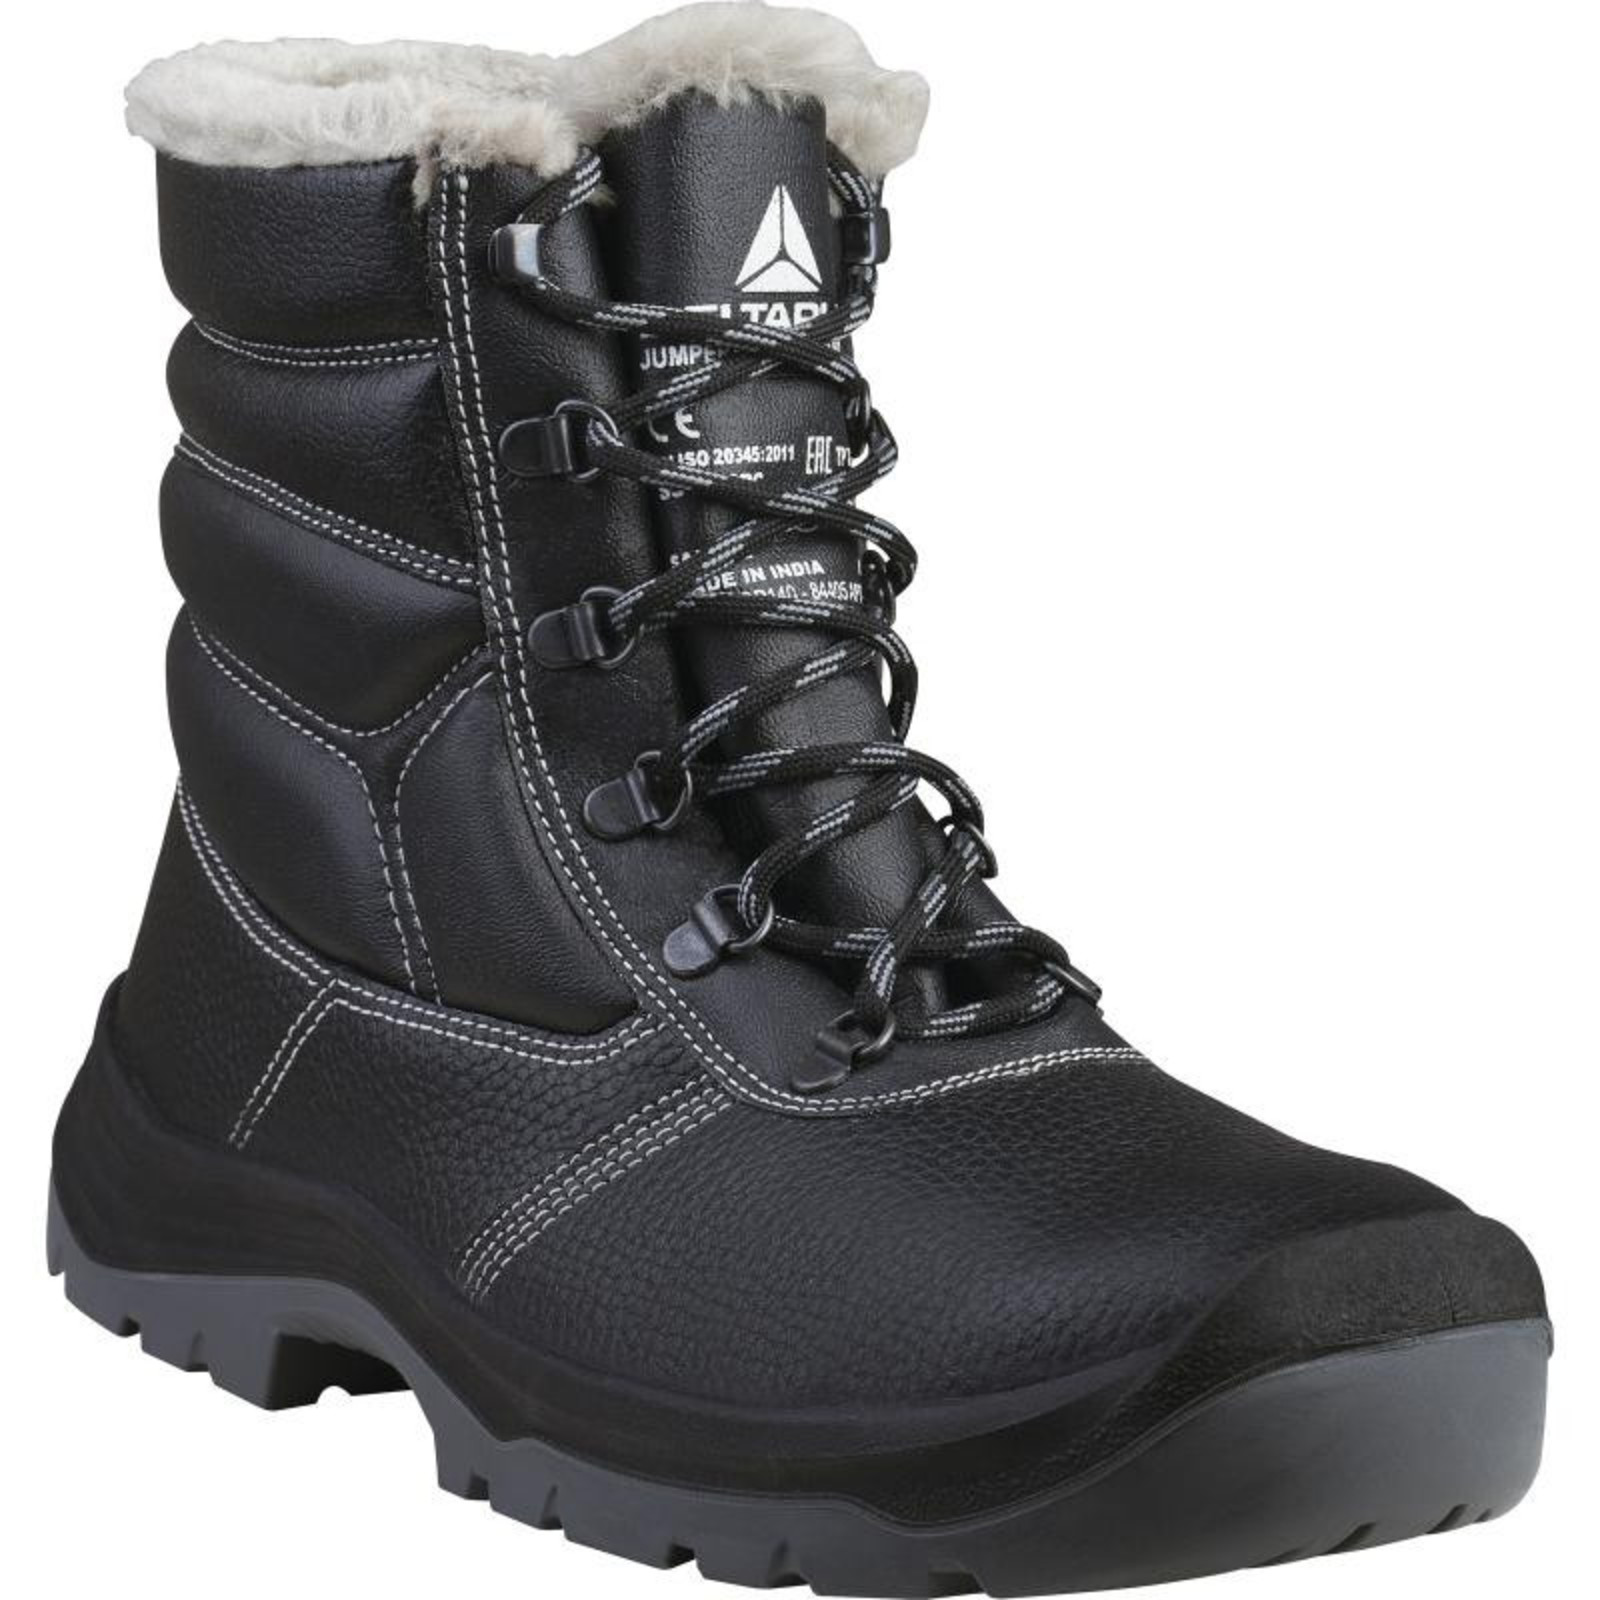 Zimná bezpečnostná obuv Delta Plus Jumper3 S3  - veľkosť: 46, farba: čierna